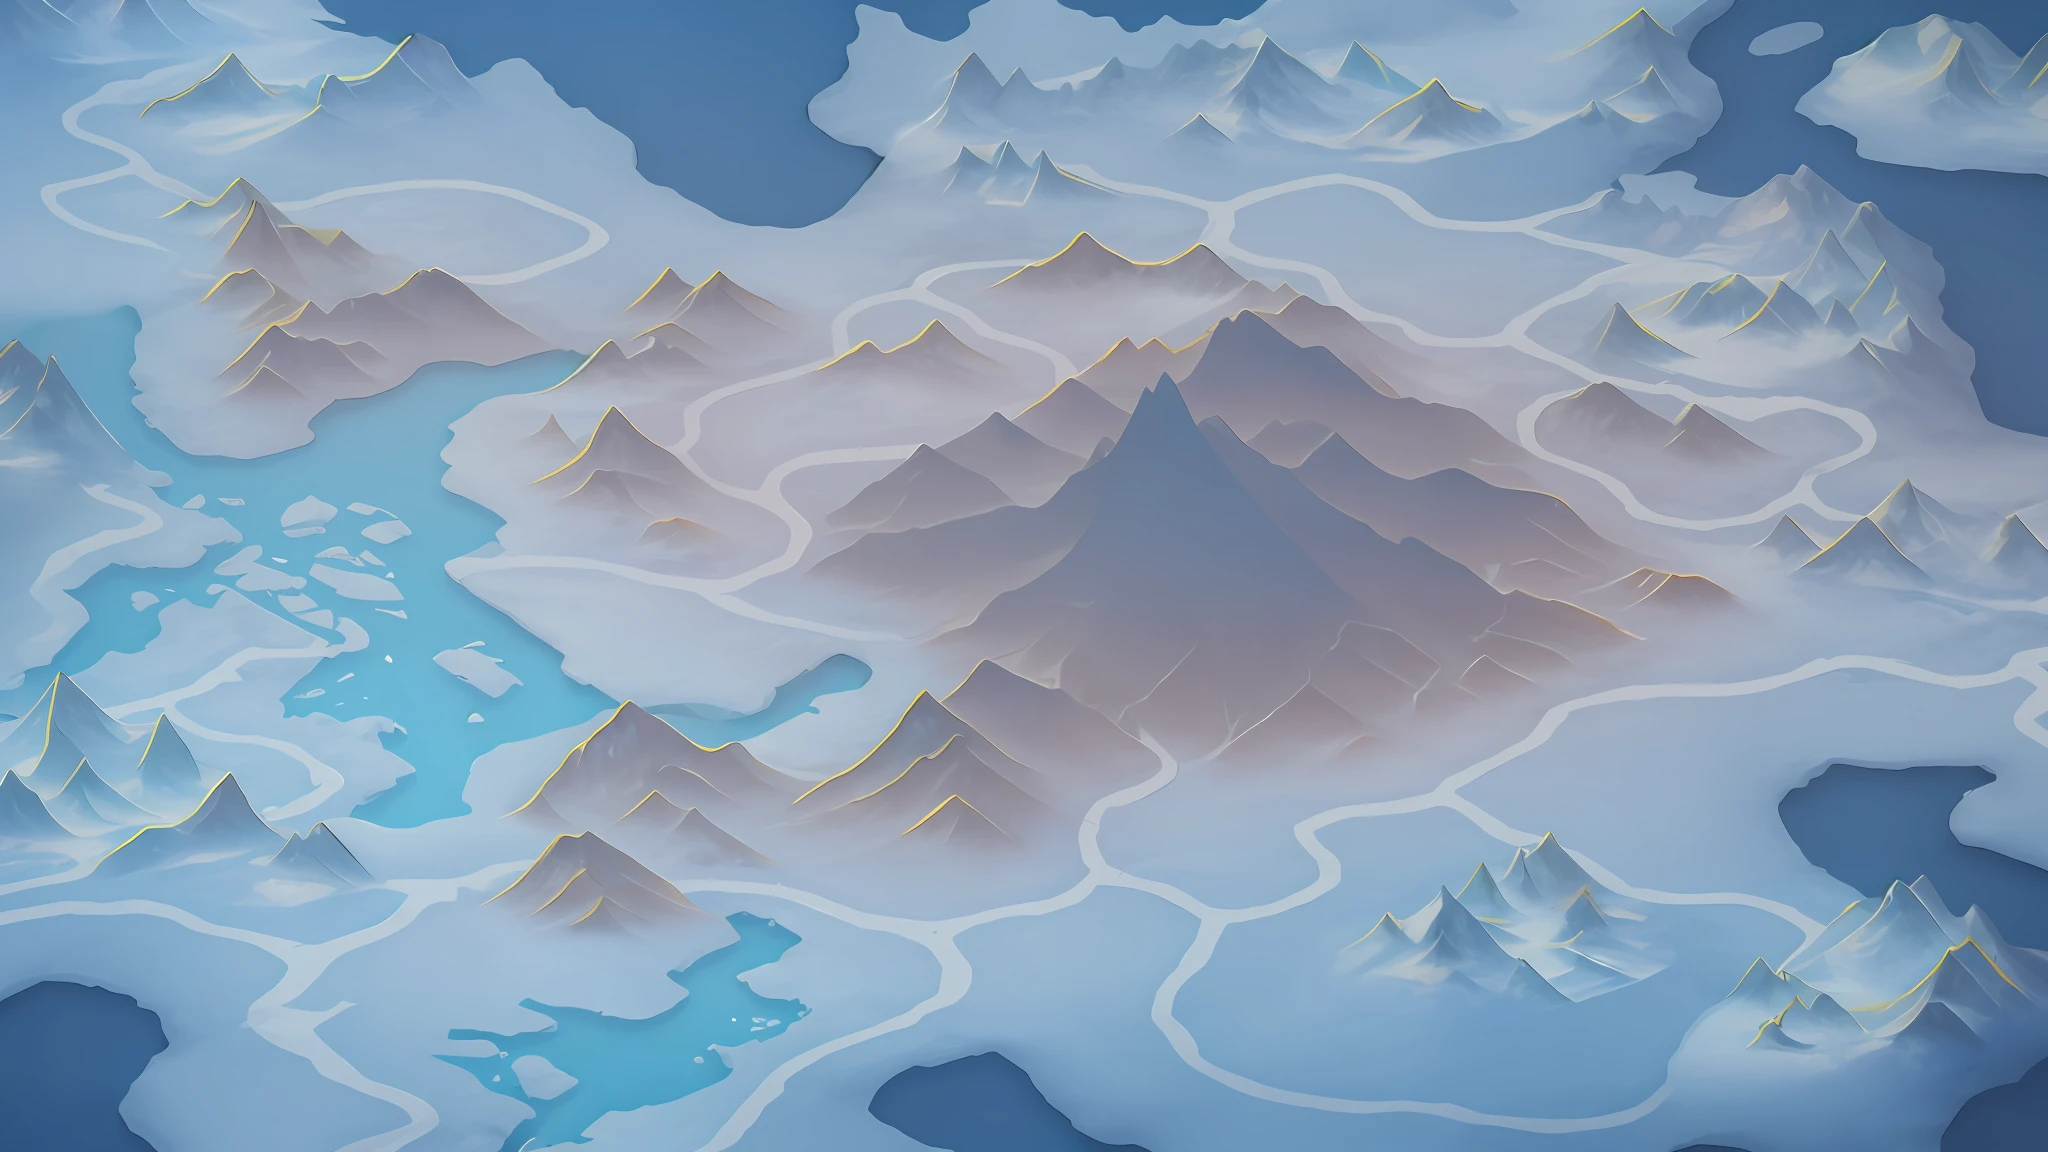 有一張大地圖，上面有一座山脈和一個湖泊, 冰冷的苔原背景, 冰山, 等距幻想地圖, 背景中的冰山, 冰山 in the background, 山區背景, 遊戲地圖霧面塗裝, 山景, 雪山, 山海, 遠處的冰山, 背景山, 详细风景 —宽度 672